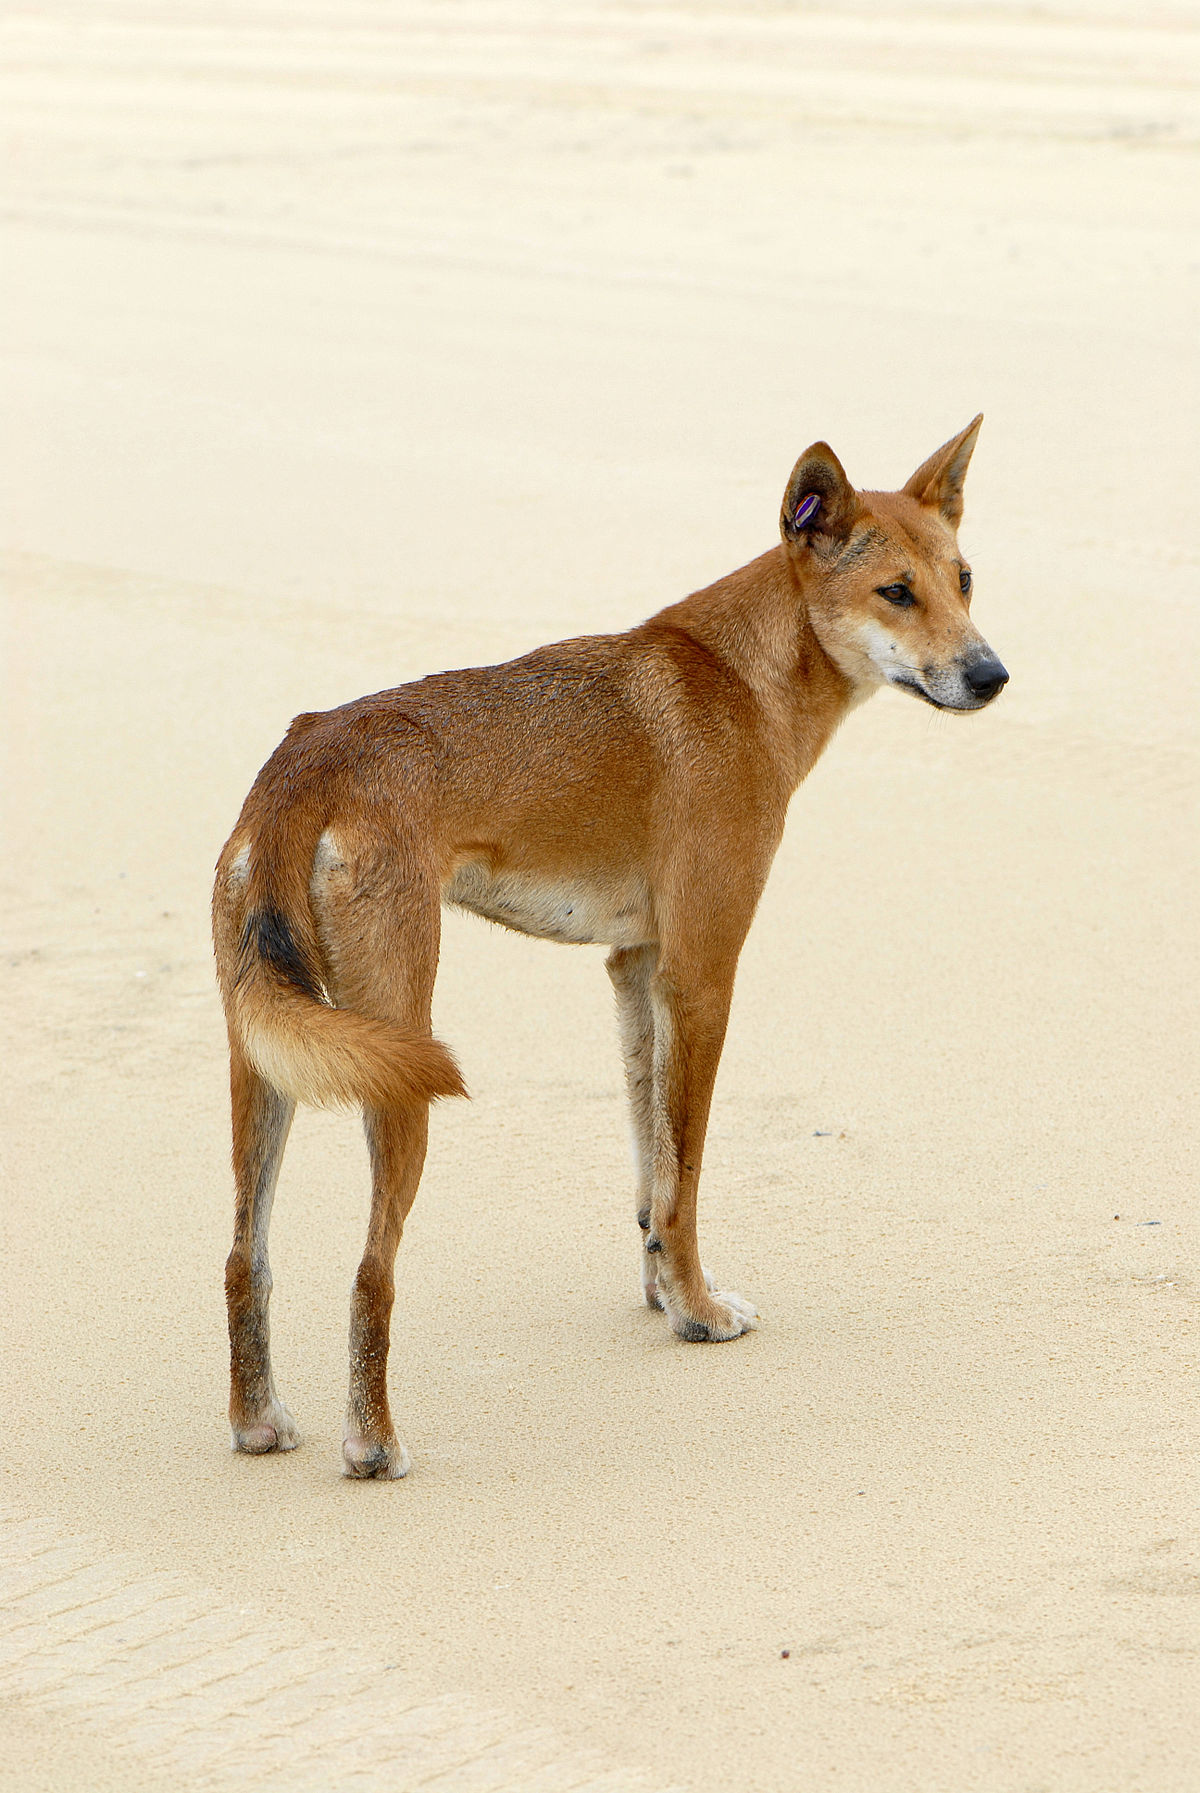 Canis lupus dingo là một loài chó hoang dã độc đáo với mái lông vàng óng. Hãy xem qua bức tranh và tô màu cho chúng để giúp chúng trở nên sống động và thú vị hơn. Bạn sẽ có một khoảng thời gian thư giãn và tận hưởng sự tự do của việc sáng tạo. Hãy thử sức mình và tô màu bức tranh này để tạo ra một tác phẩm đầy tình cảm và nghệ thuật!